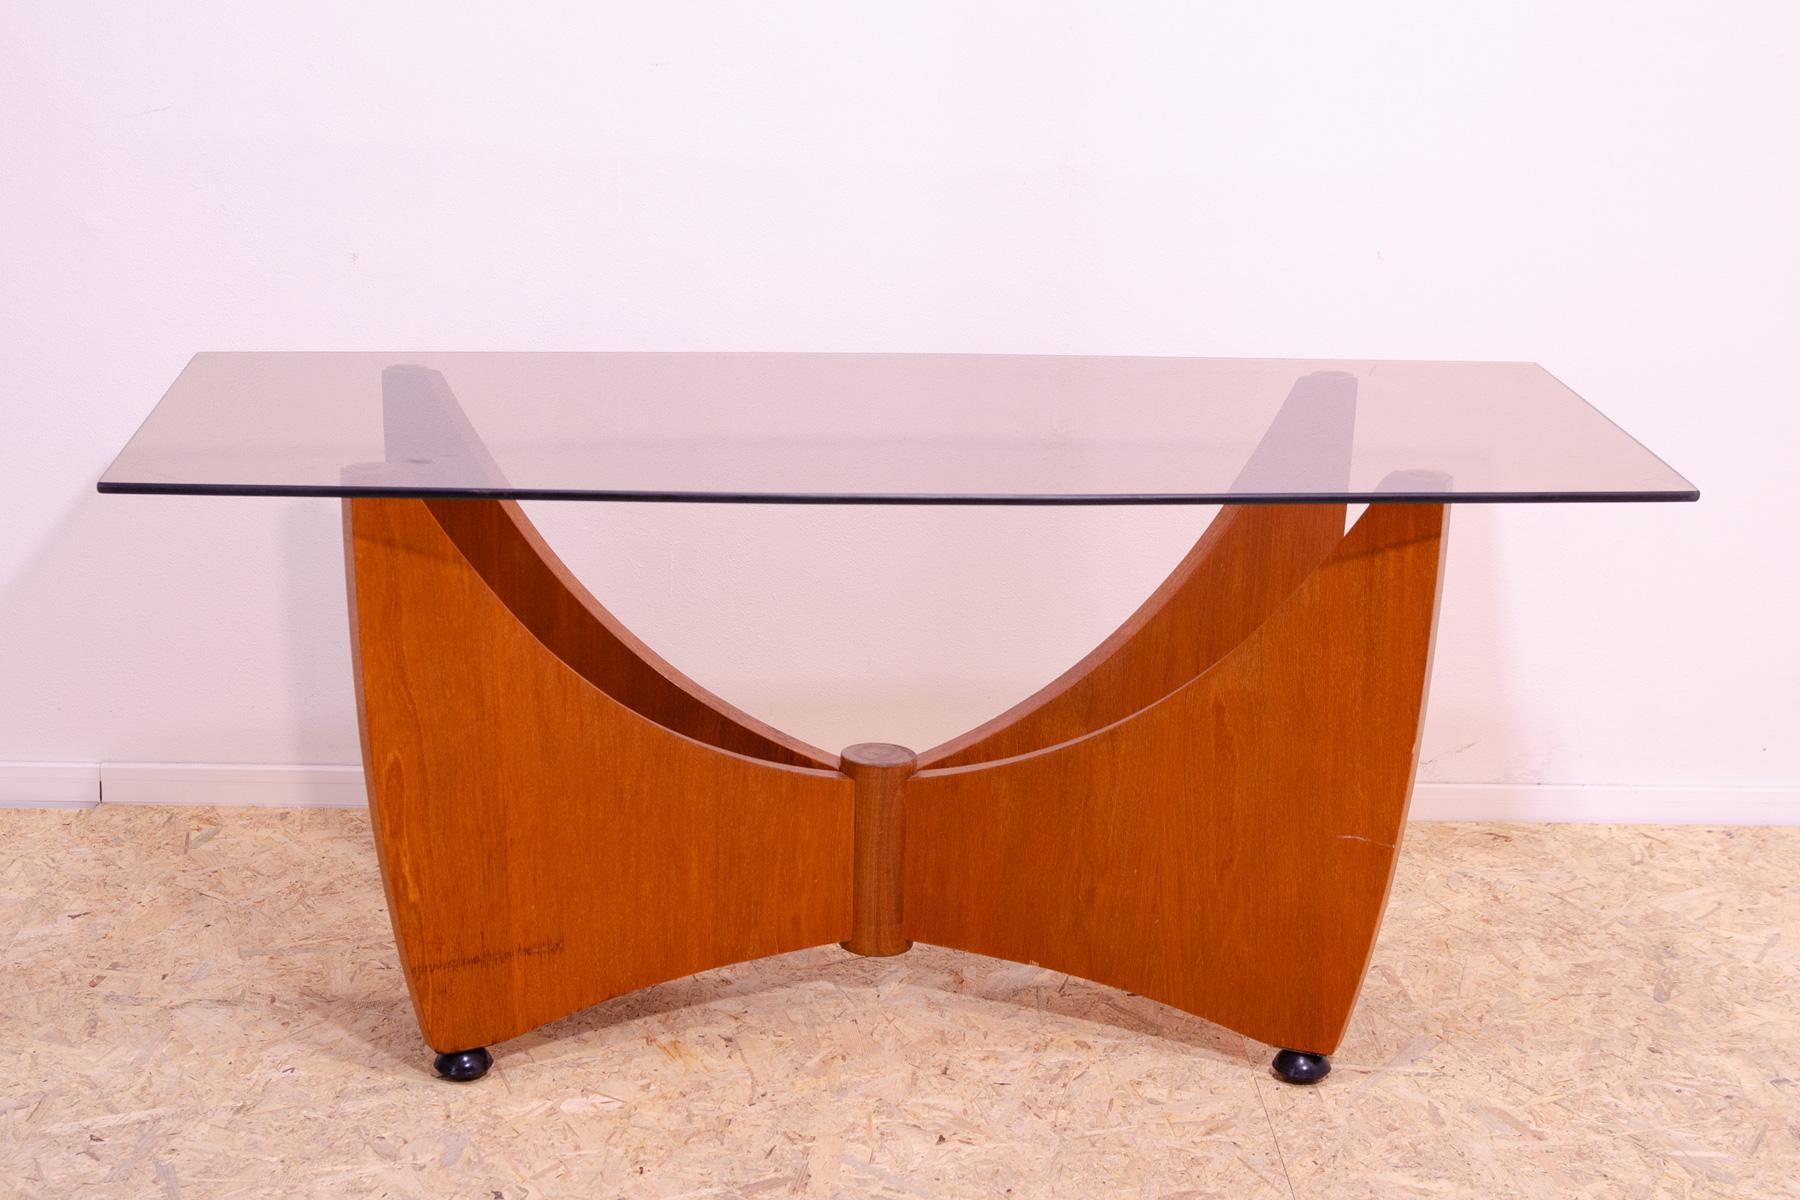 Cette table basse a été fabriquée dans l'ancienne Tchécoslovaquie dans les années 1980 pour faire partie d'un salon.
Son design est élégant et moderne.

Il possède des pieds de forme intéressante avec des découpes arquées et un plateau en verre